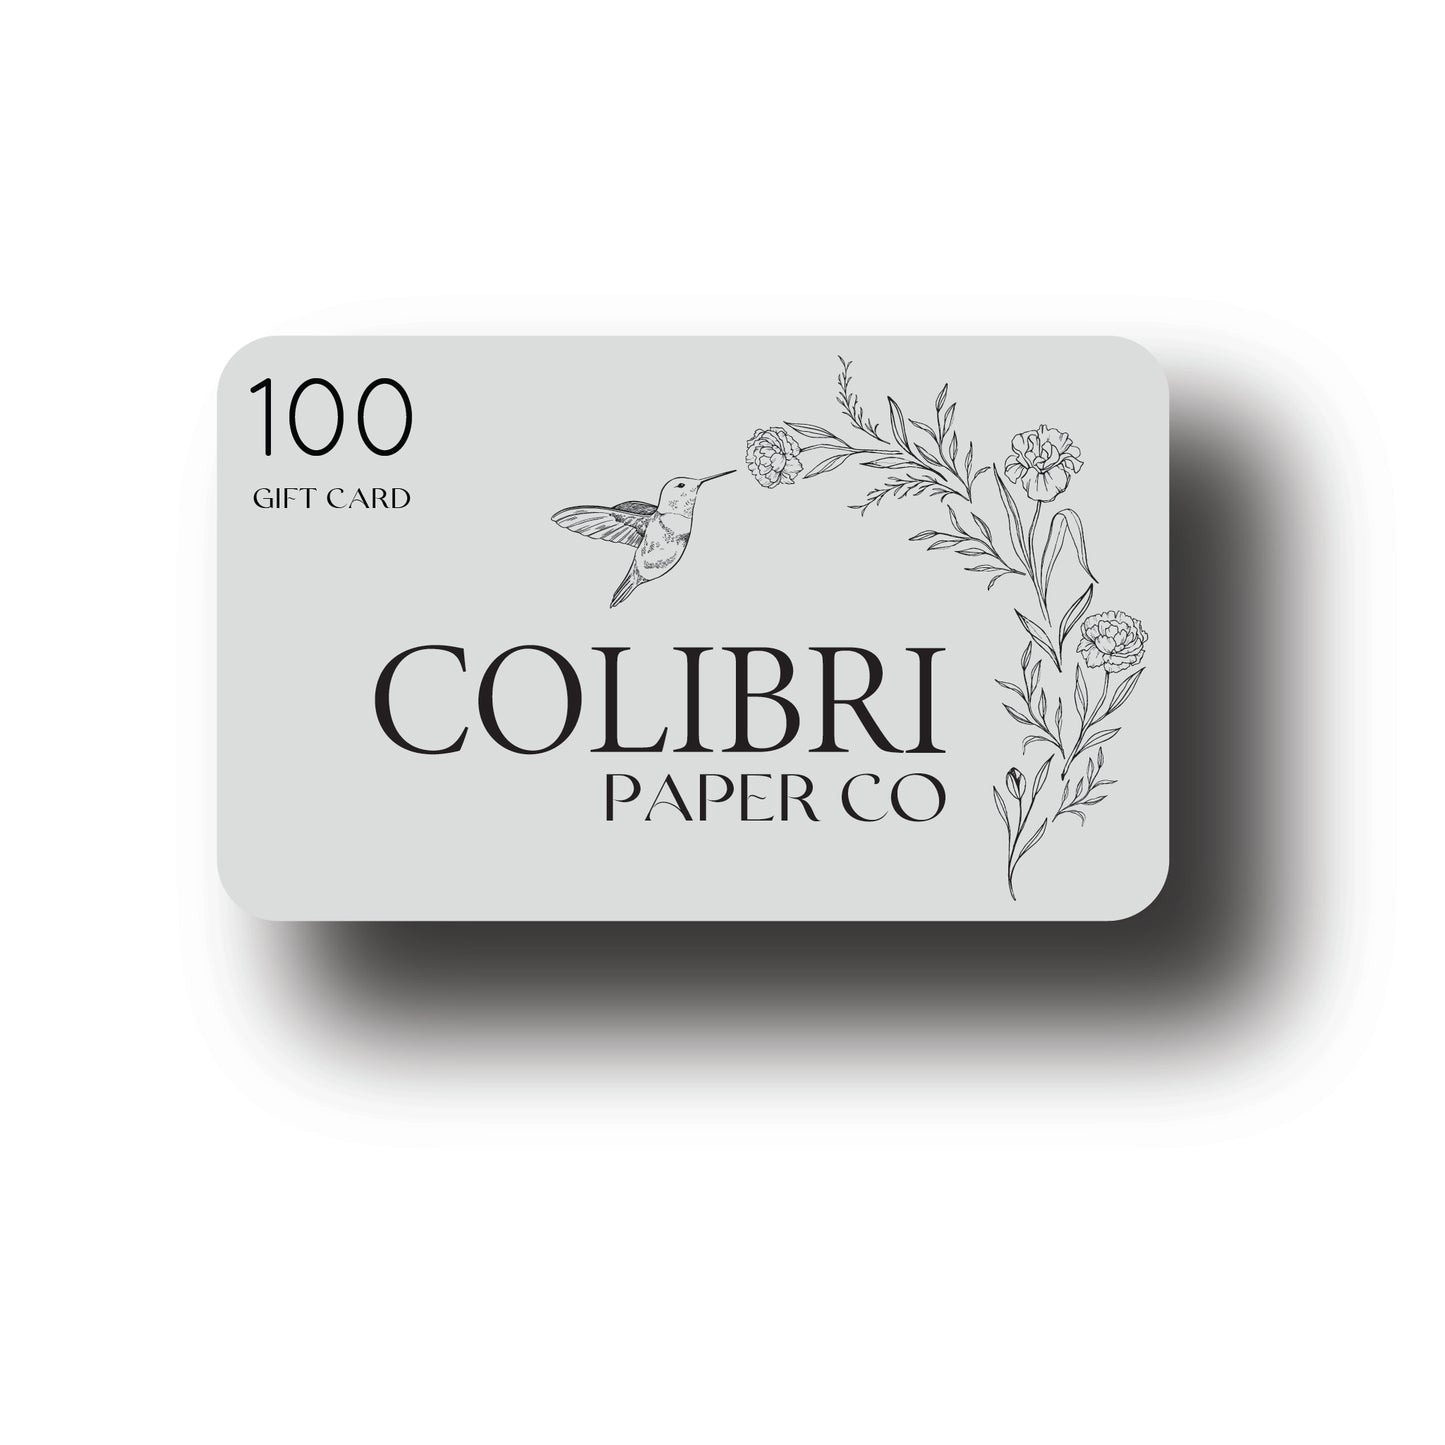 Colibri Paper Co Gift Card